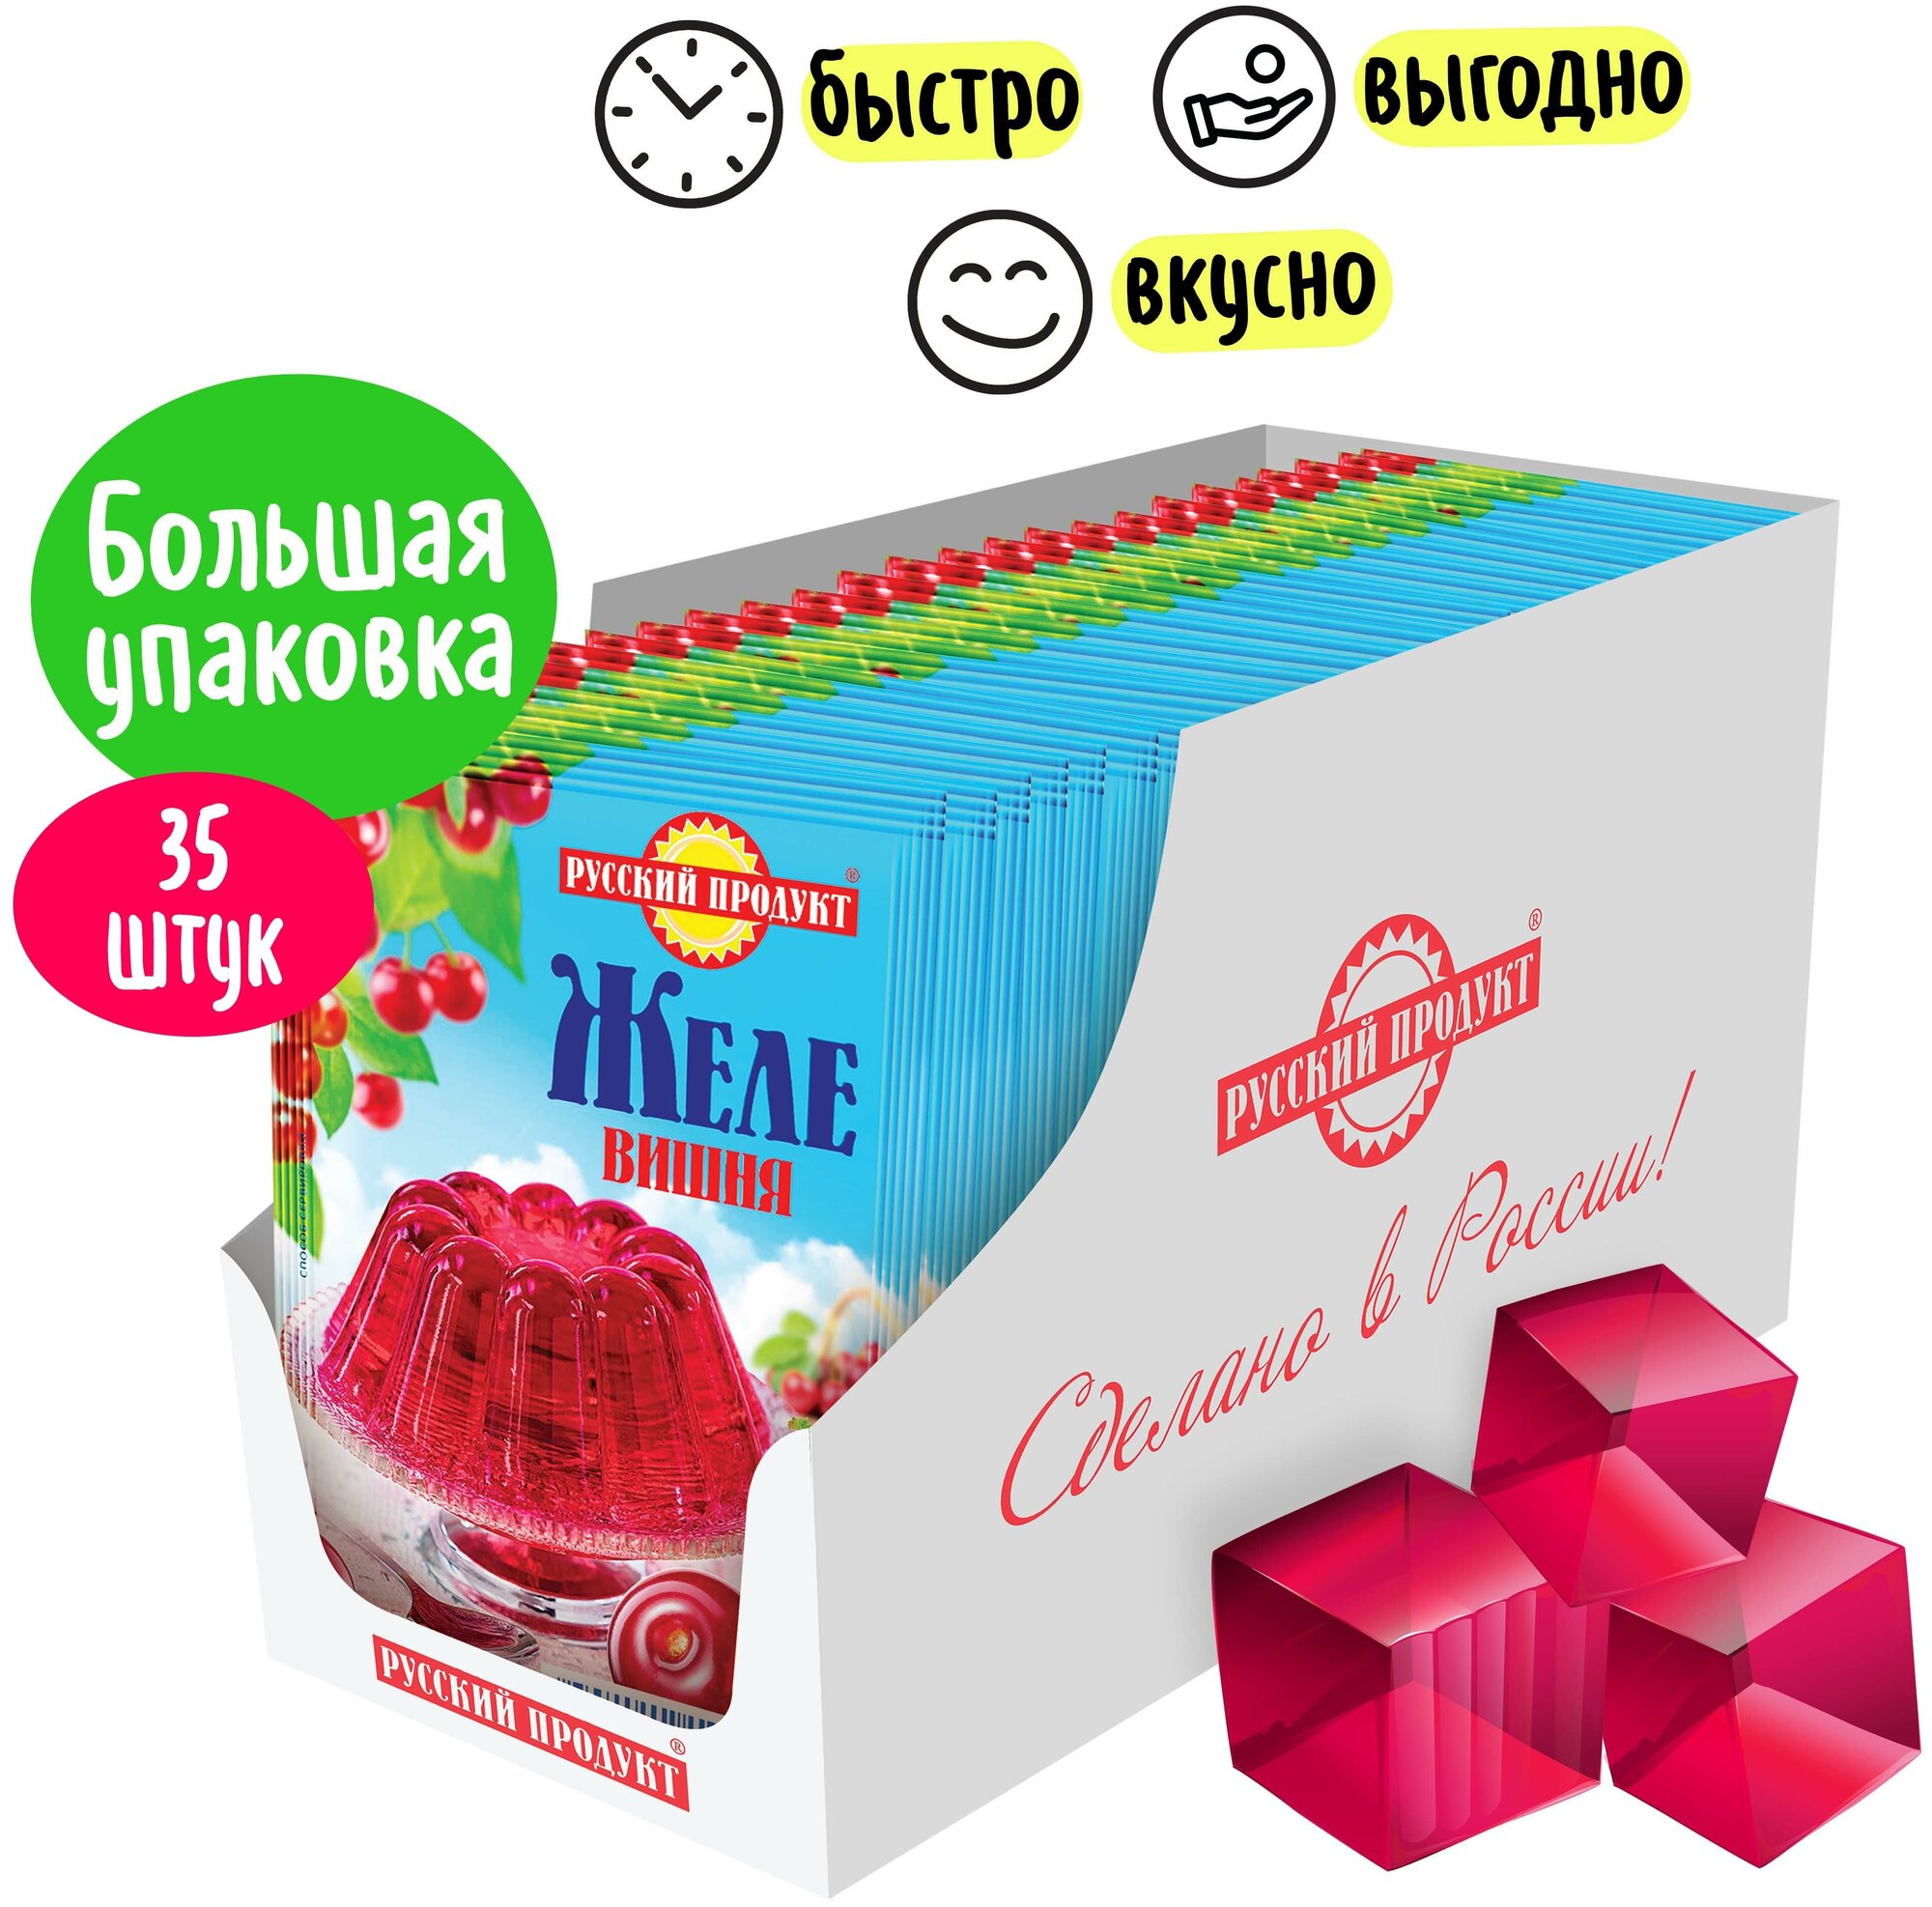 Желе быстрого приготовления "Вкус вишни", 35 упаковок по 50 грамм в коробке